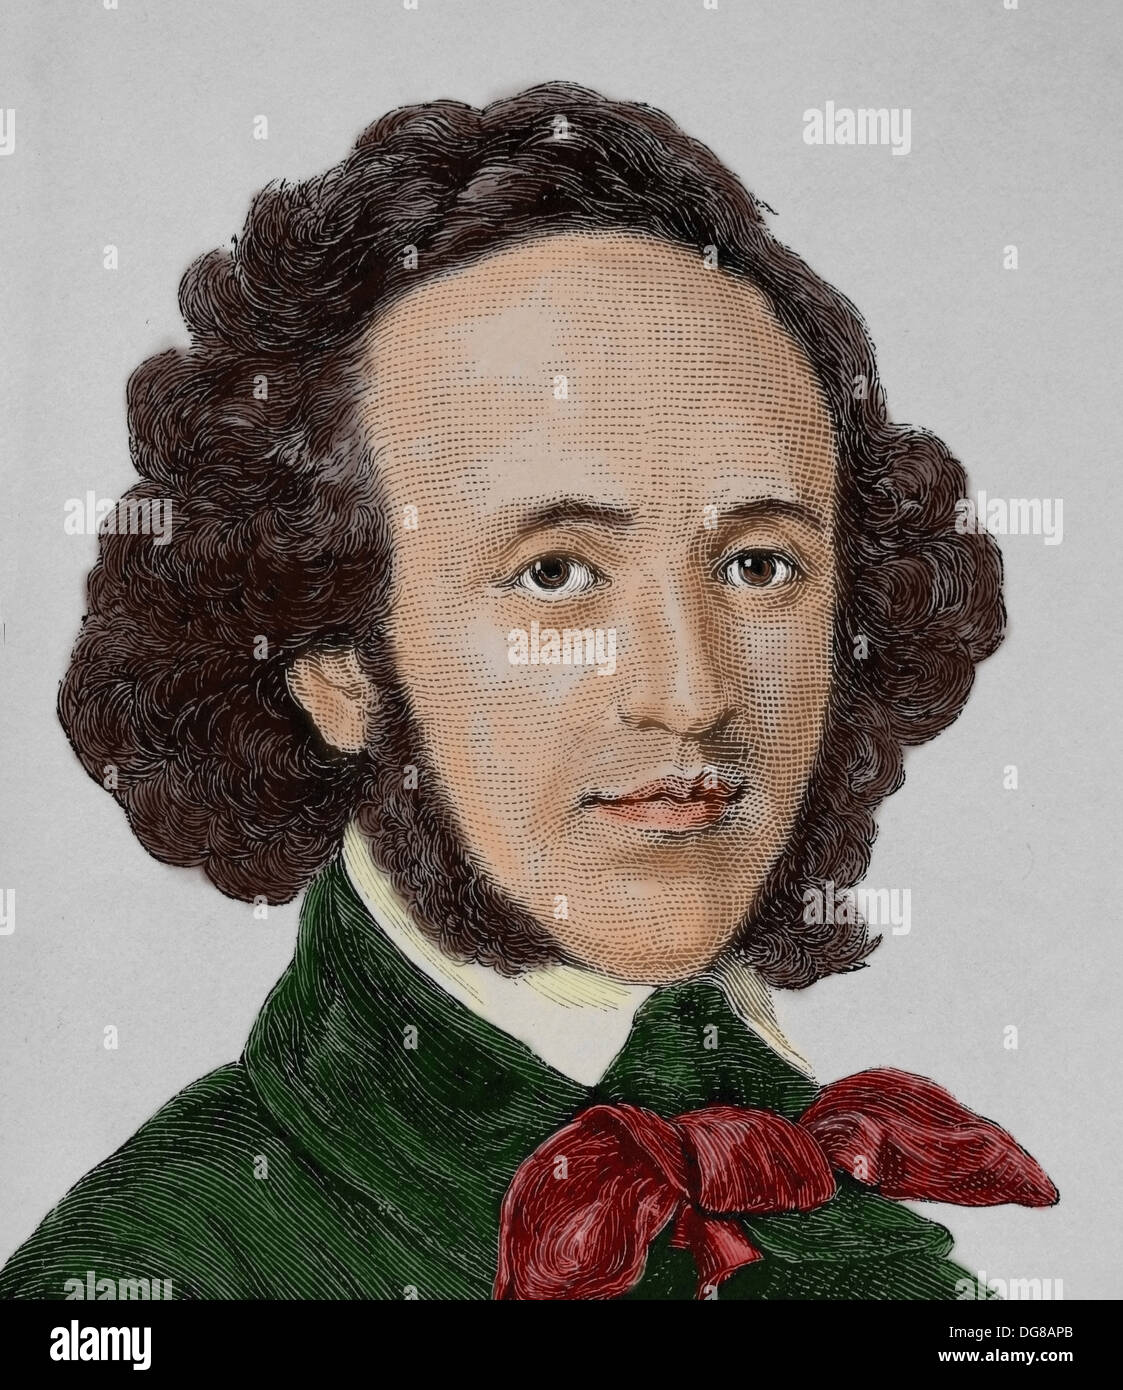 Felix Mendelssohn (1809 - 1847). Compositore tedesco, pianista, organista e conduttore degli inizi del periodo romantico. Incisione. Foto Stock